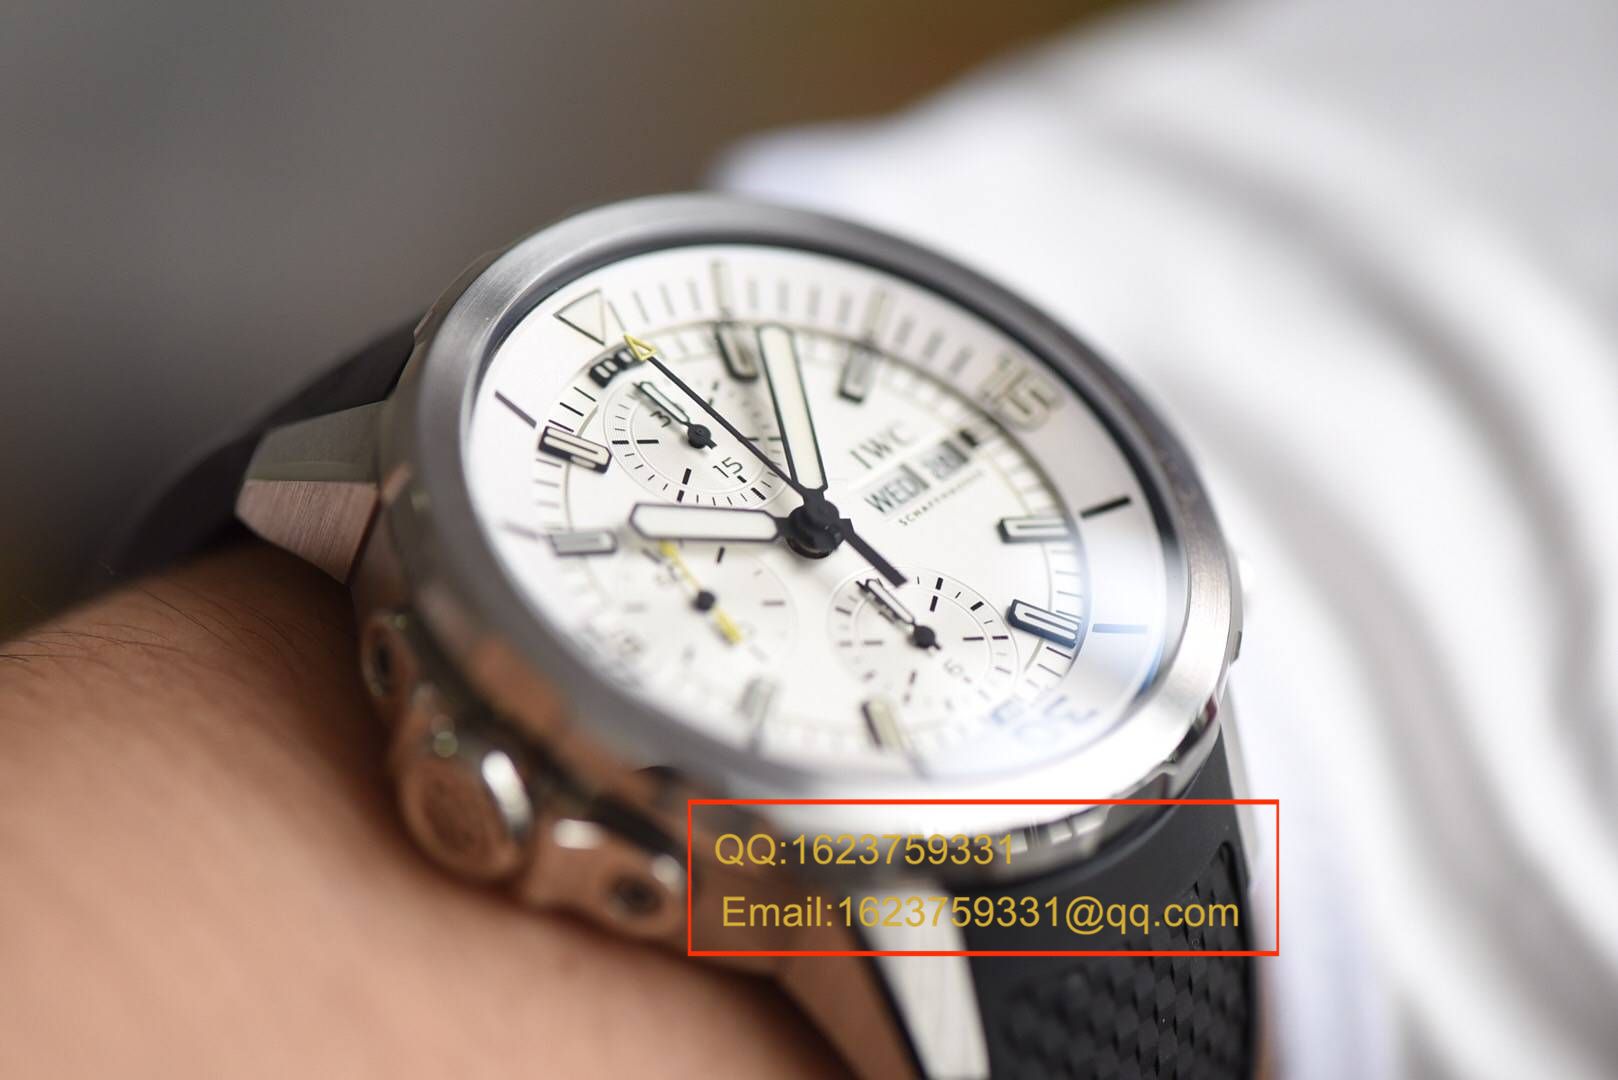 【HBBV6一比一超A高仿手表】万国海洋时计系列 IW376802 腕表 《胶带/钢带均可选》 